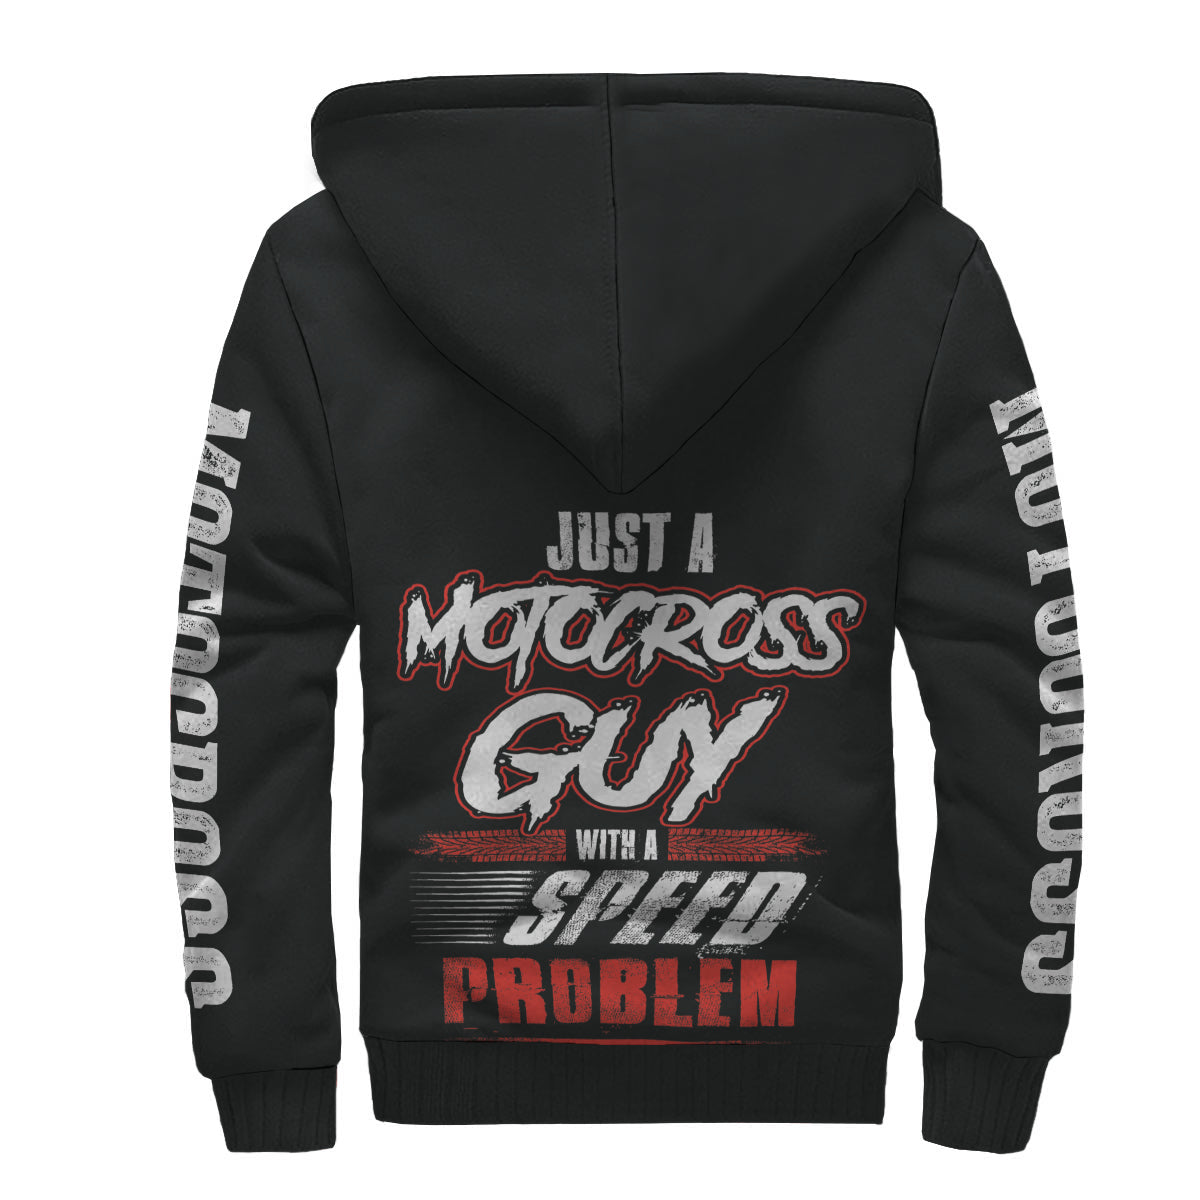 Motocross Sherpa Jacket